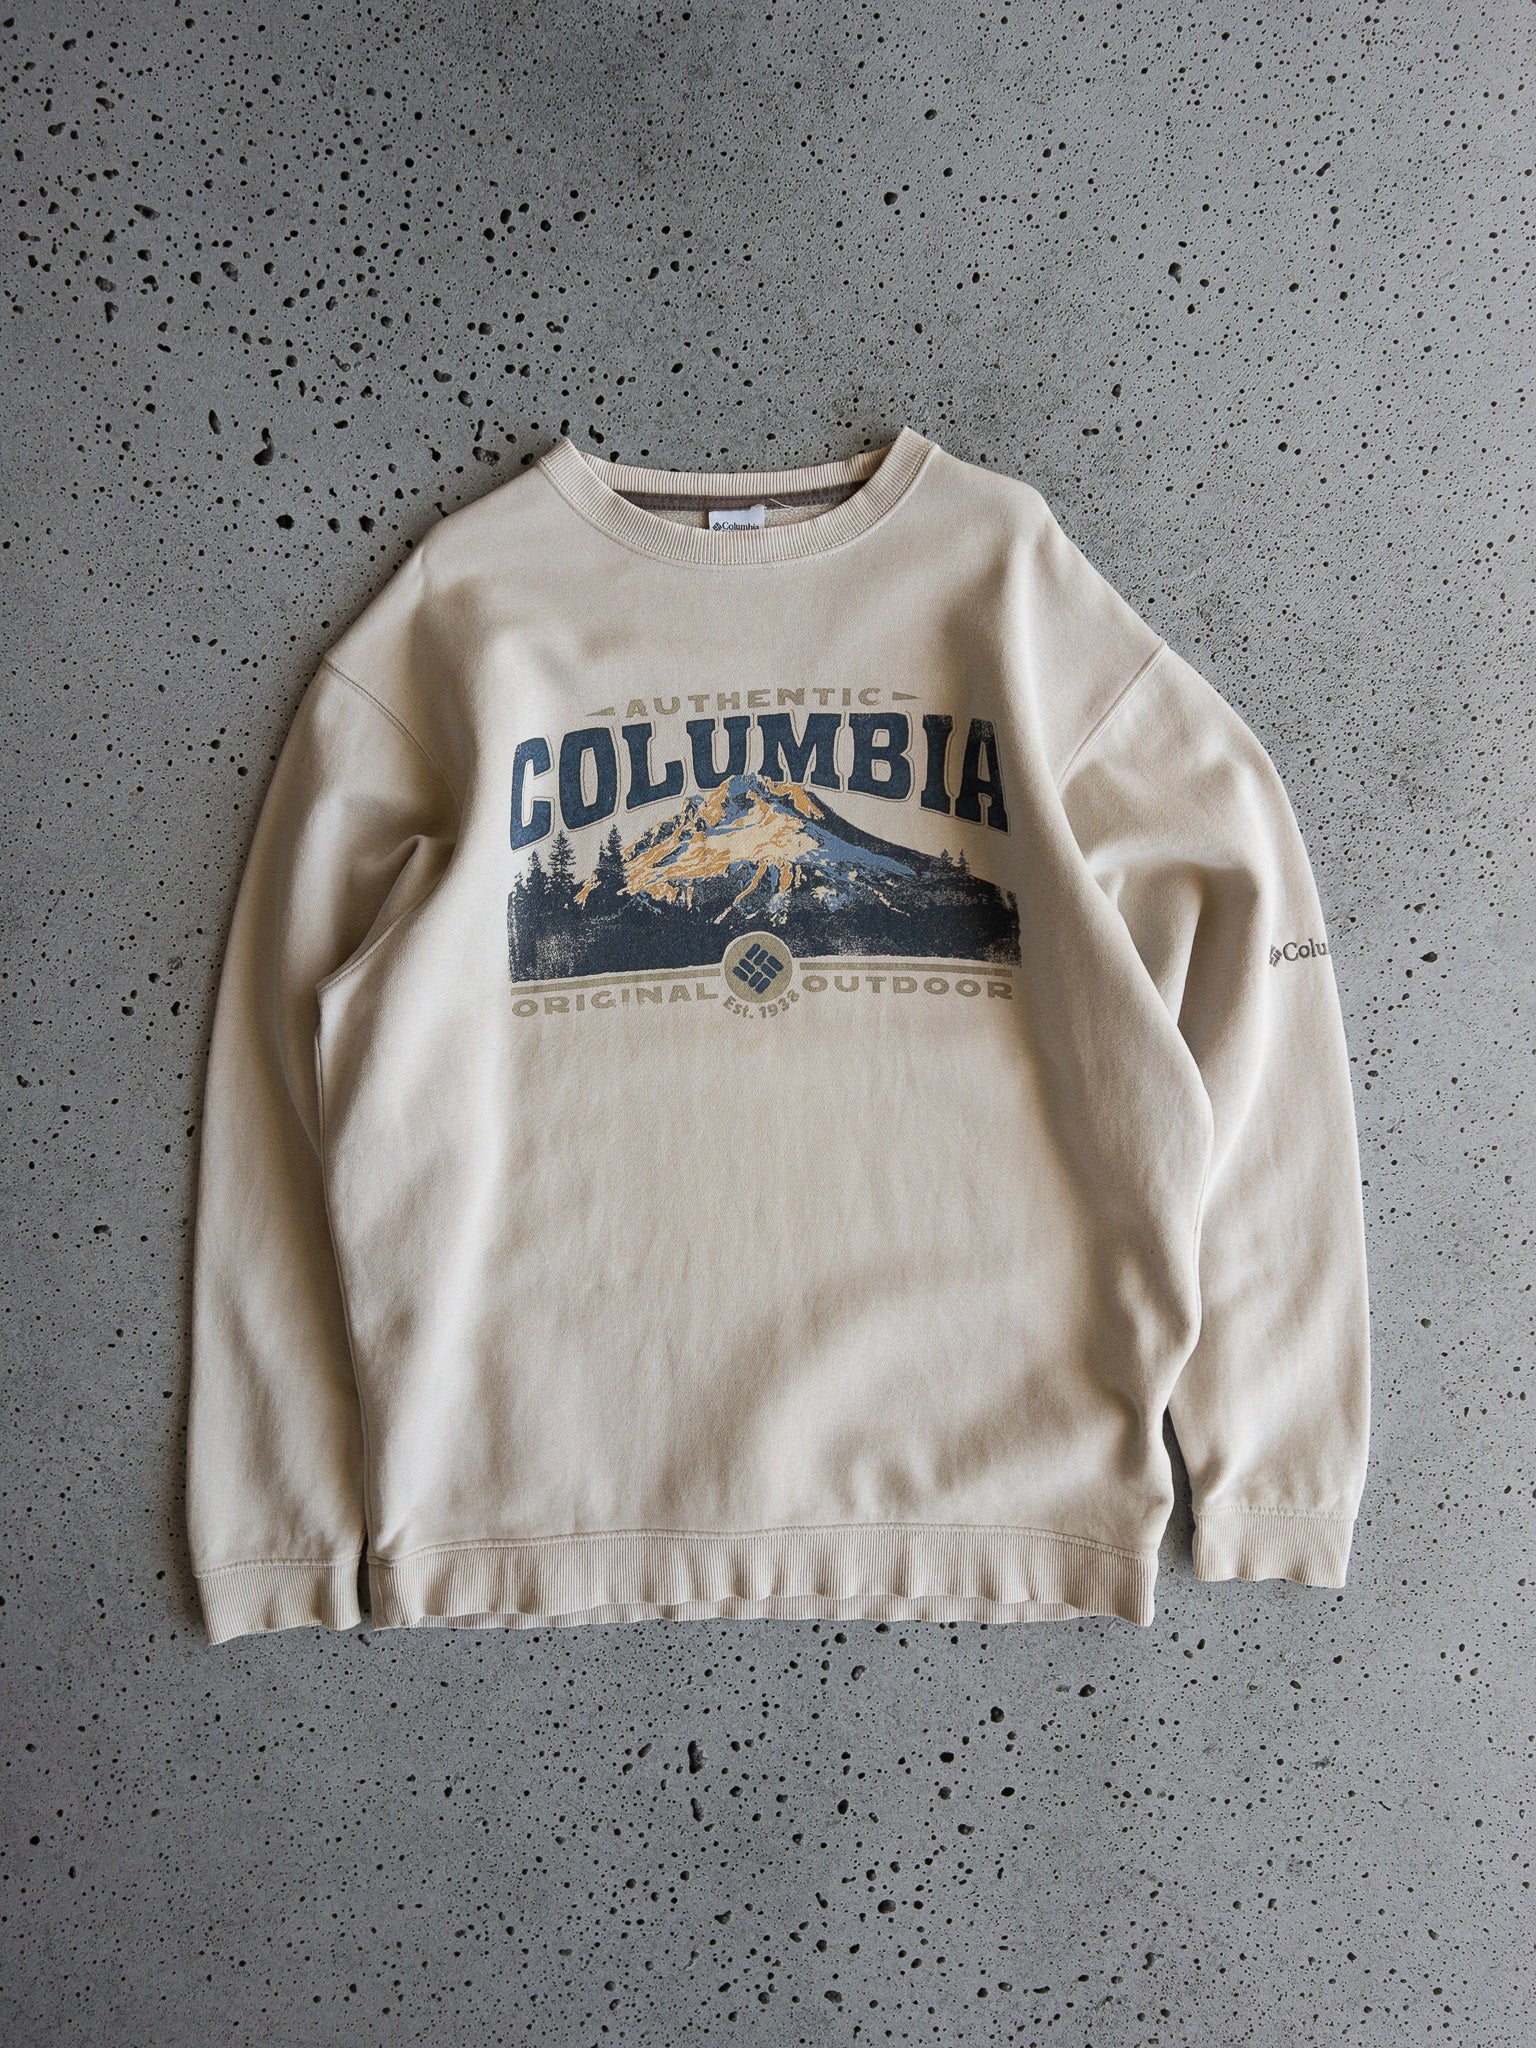 Vintage Columbia Sweatshirt (L)